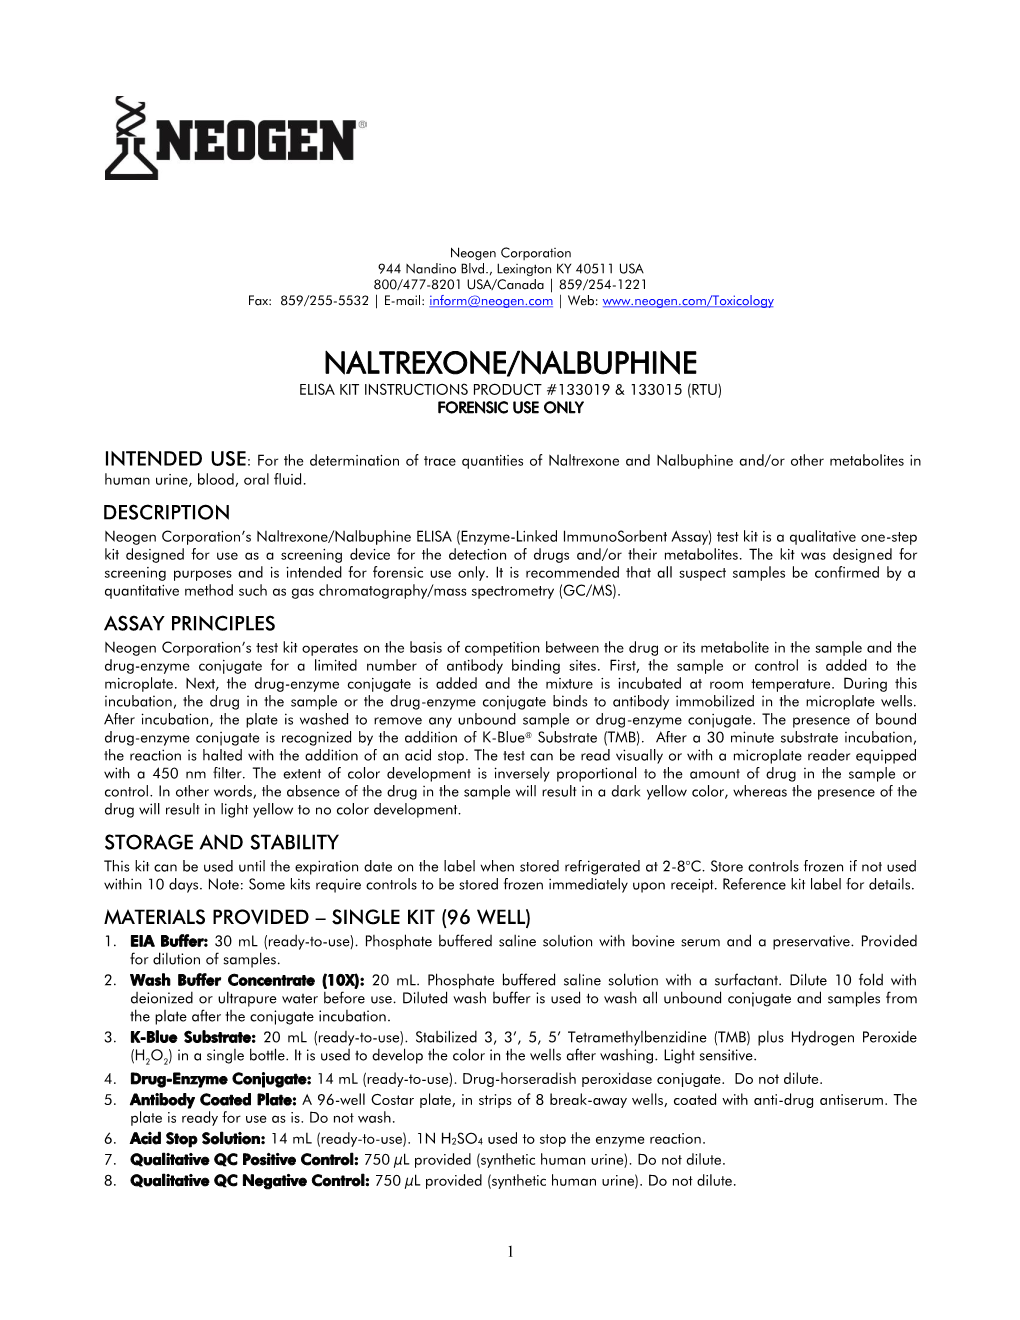 Naltrexone/Nalbuphine Elisa Kit Instructions Product #133019 & 133015 (Rtu) Forensic Use Only